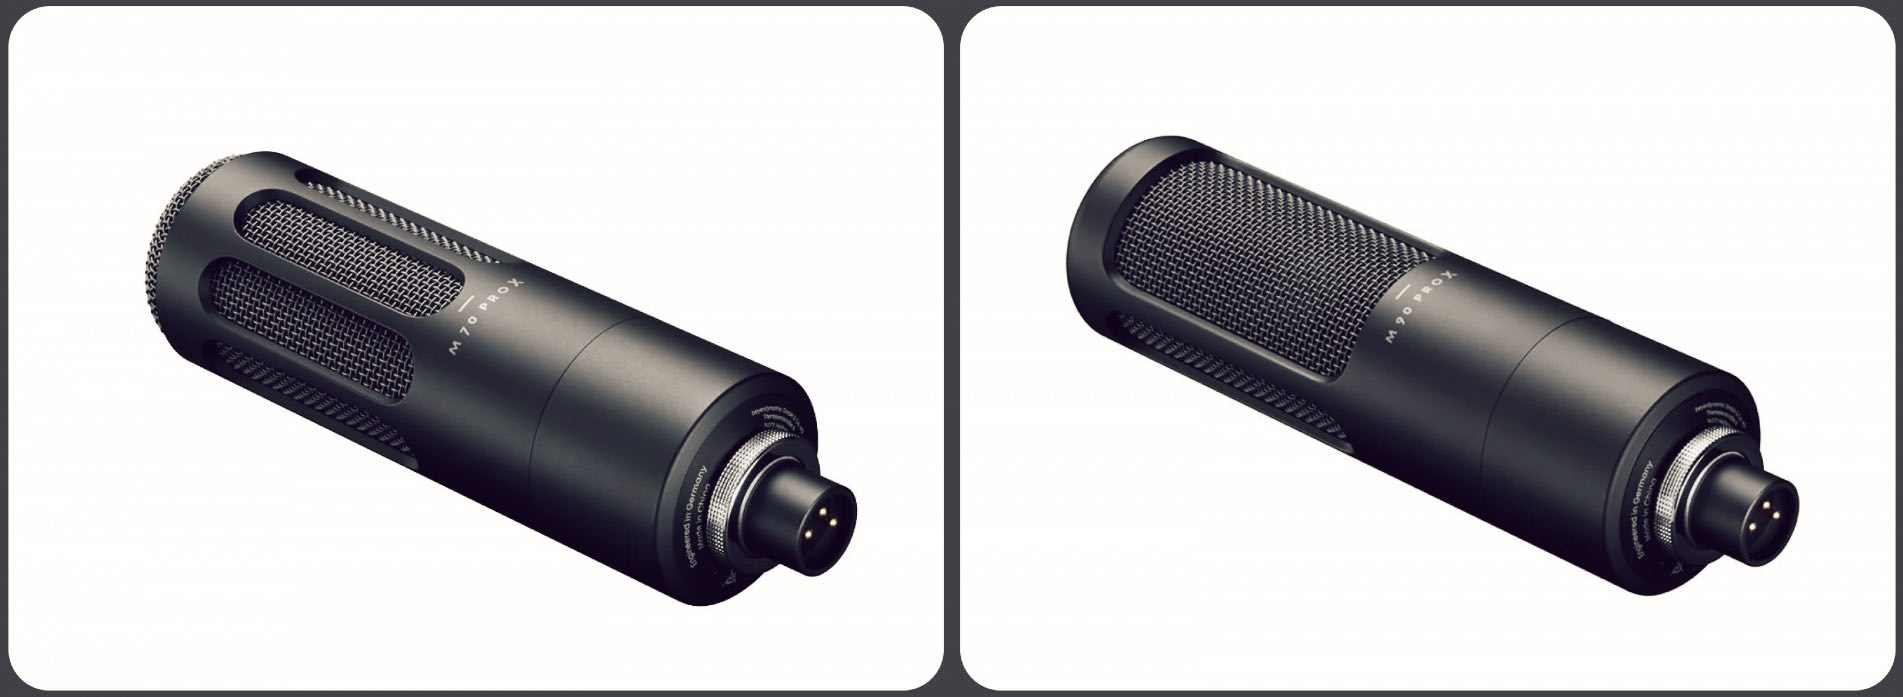 Beyerdynamic Pro X es la nueva serie de auriculares y micrófonos que ofrecen una alta calidad de sonido con prestaciones modernas